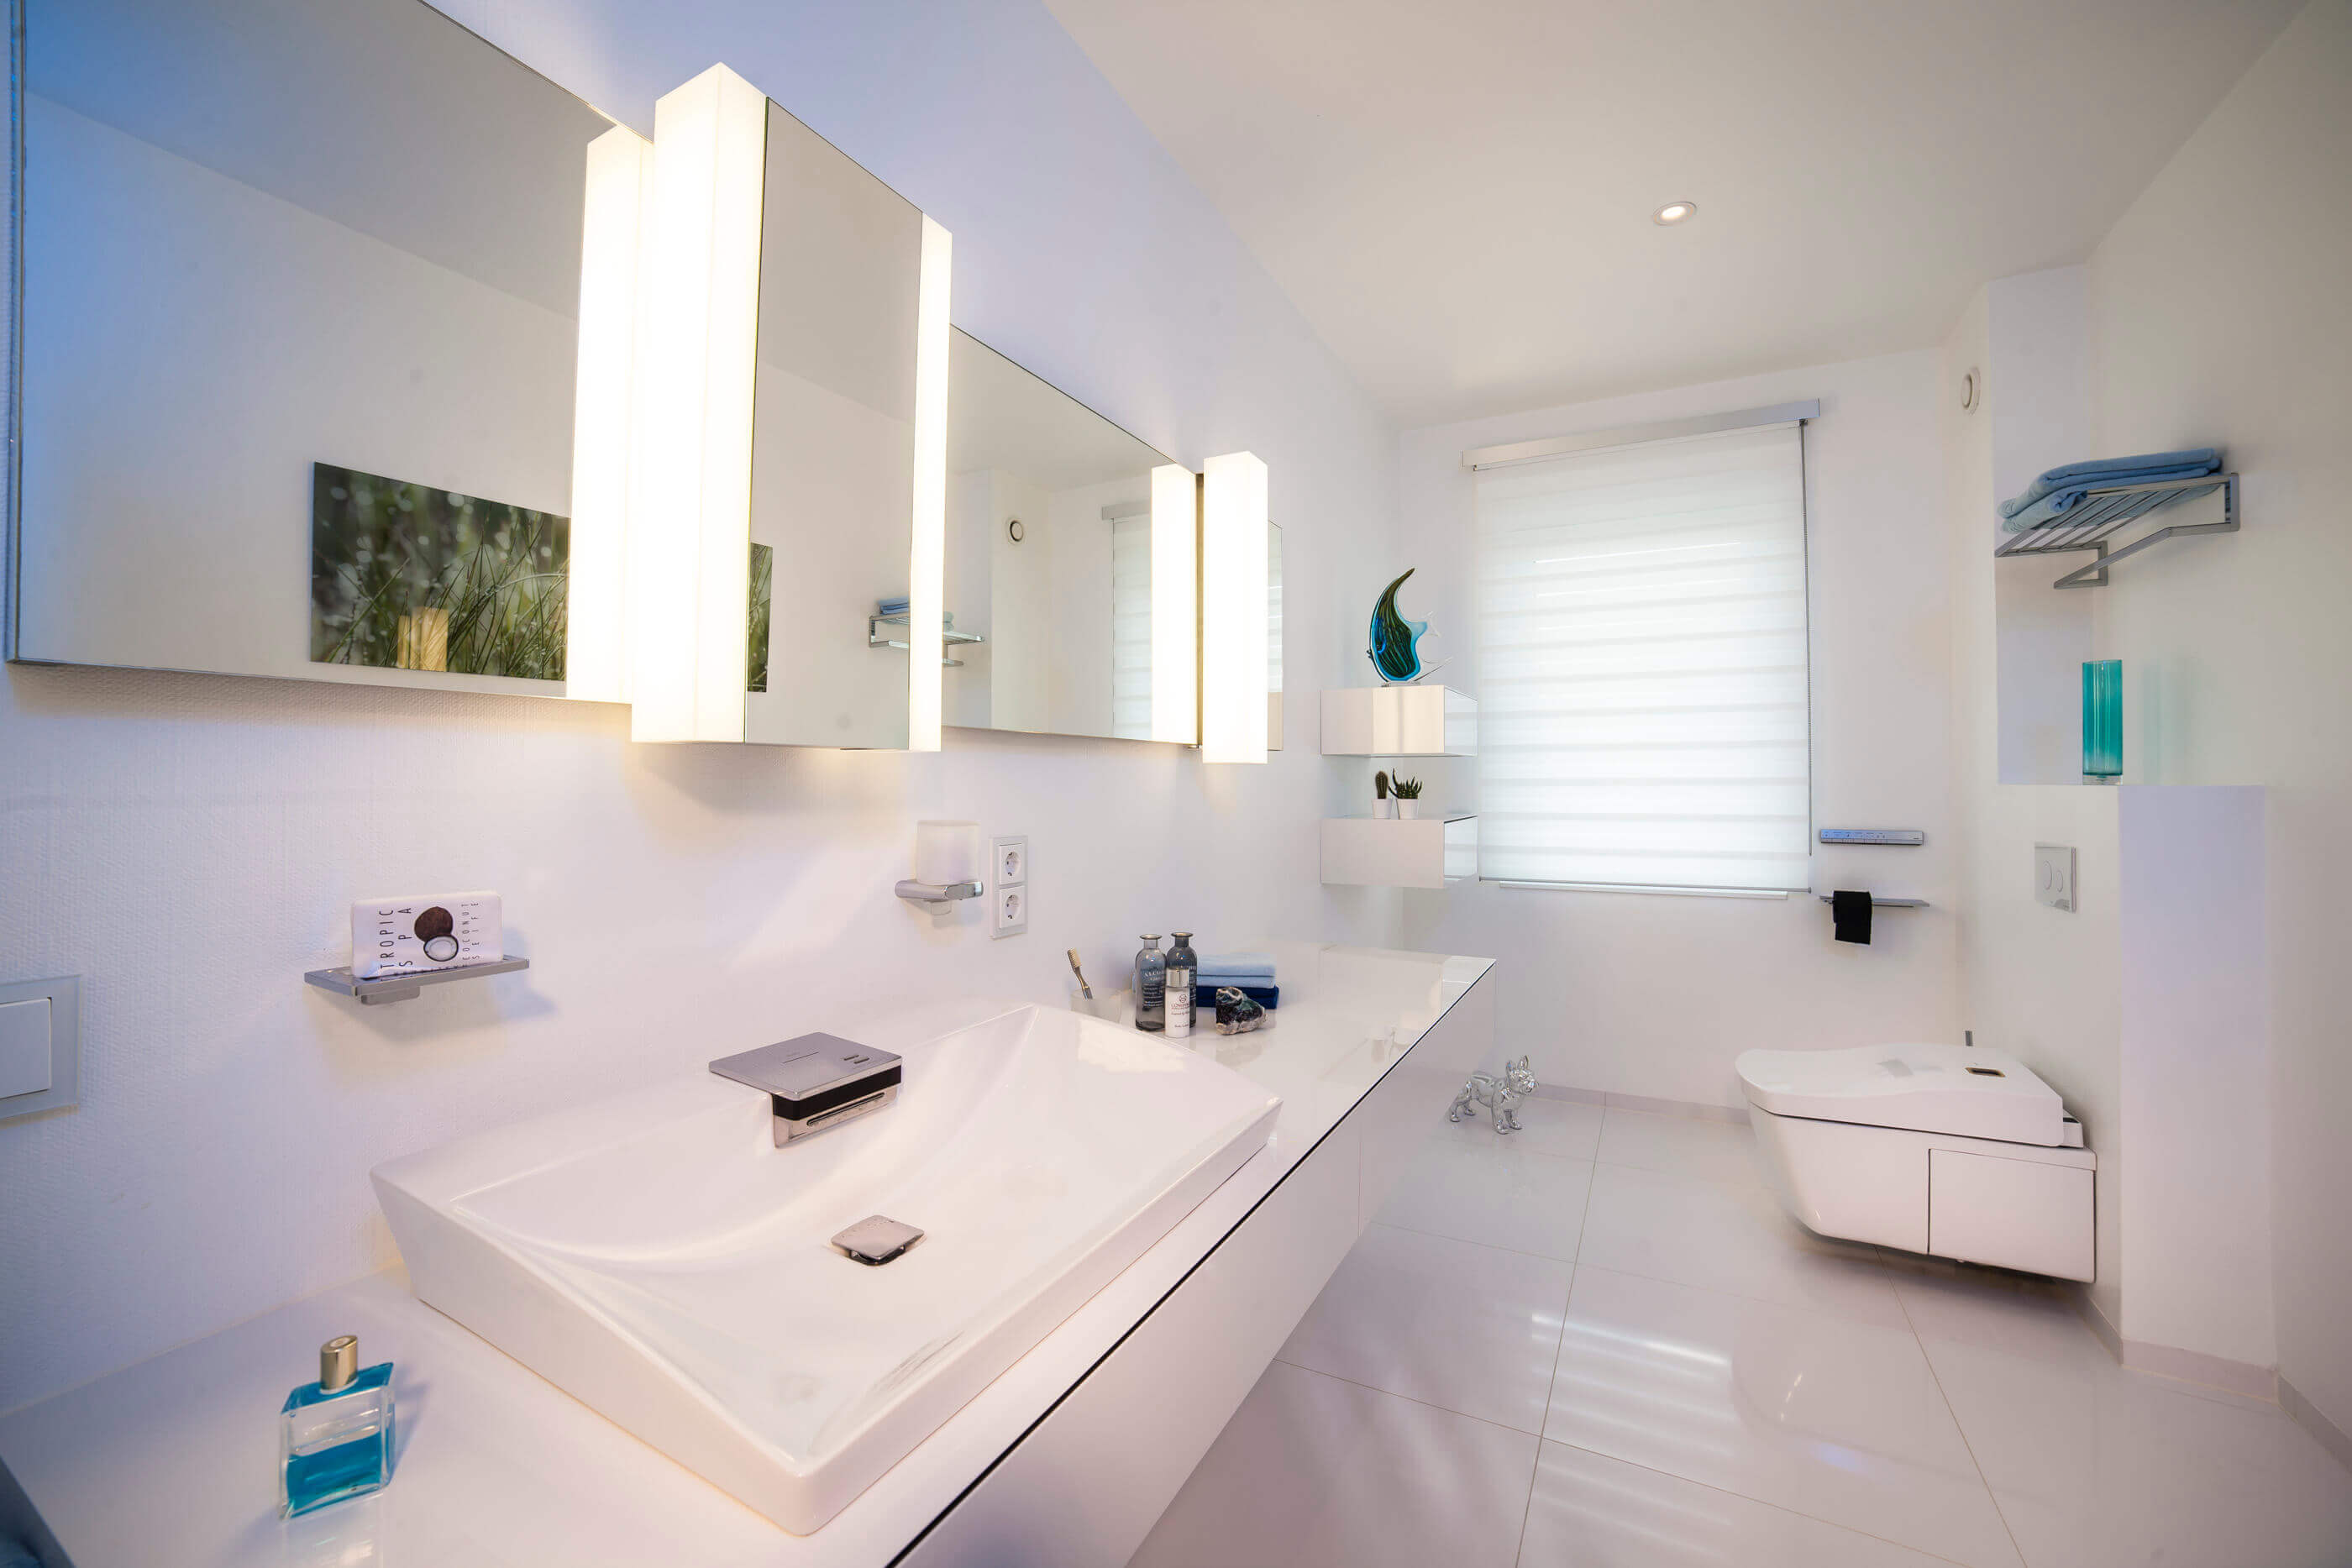 Grosses Badezimmer in Weiß mit Neorest WC von TOTO